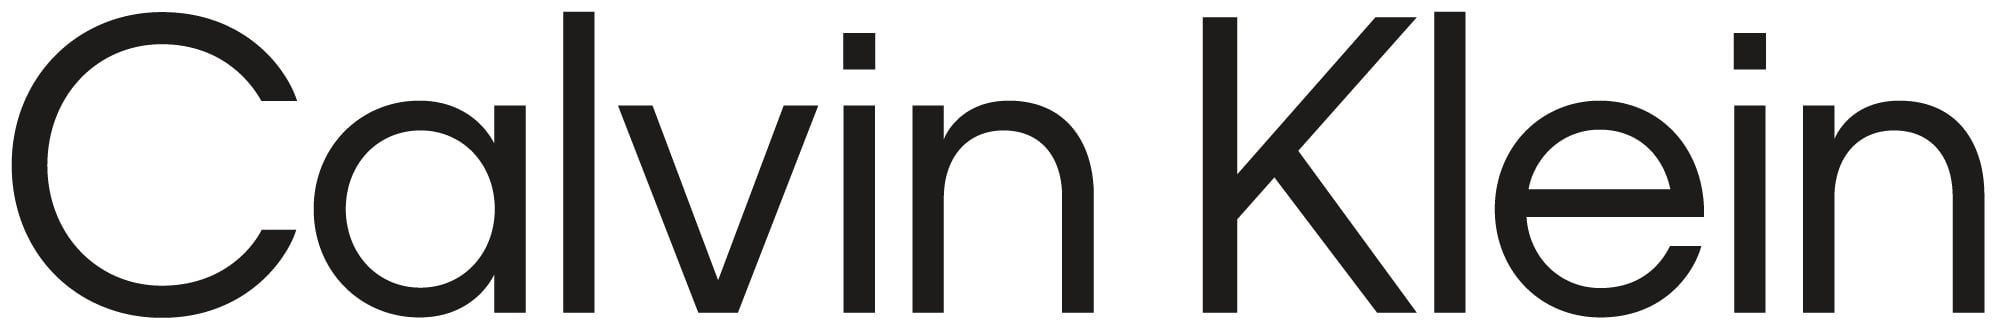 Brand logo for Calvin Klein